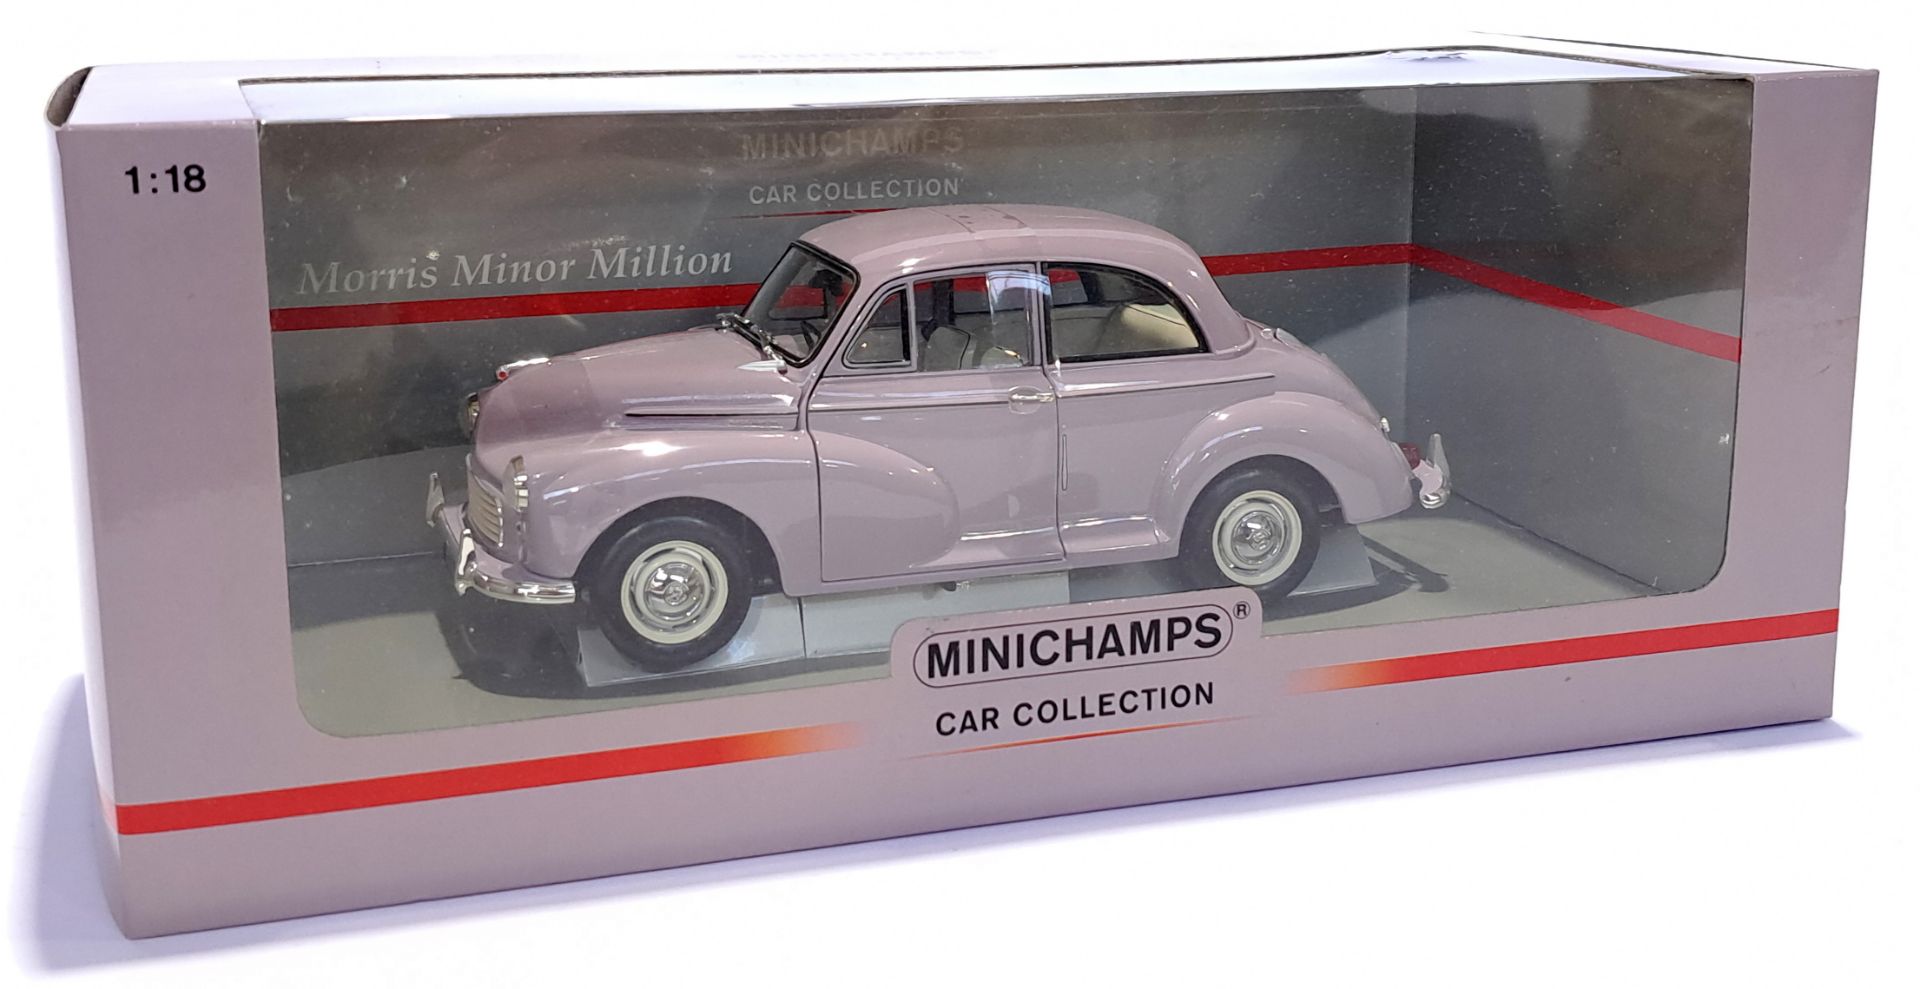 Minichamps (Paul's Model Art) 1:18 scale Morris Minor Million